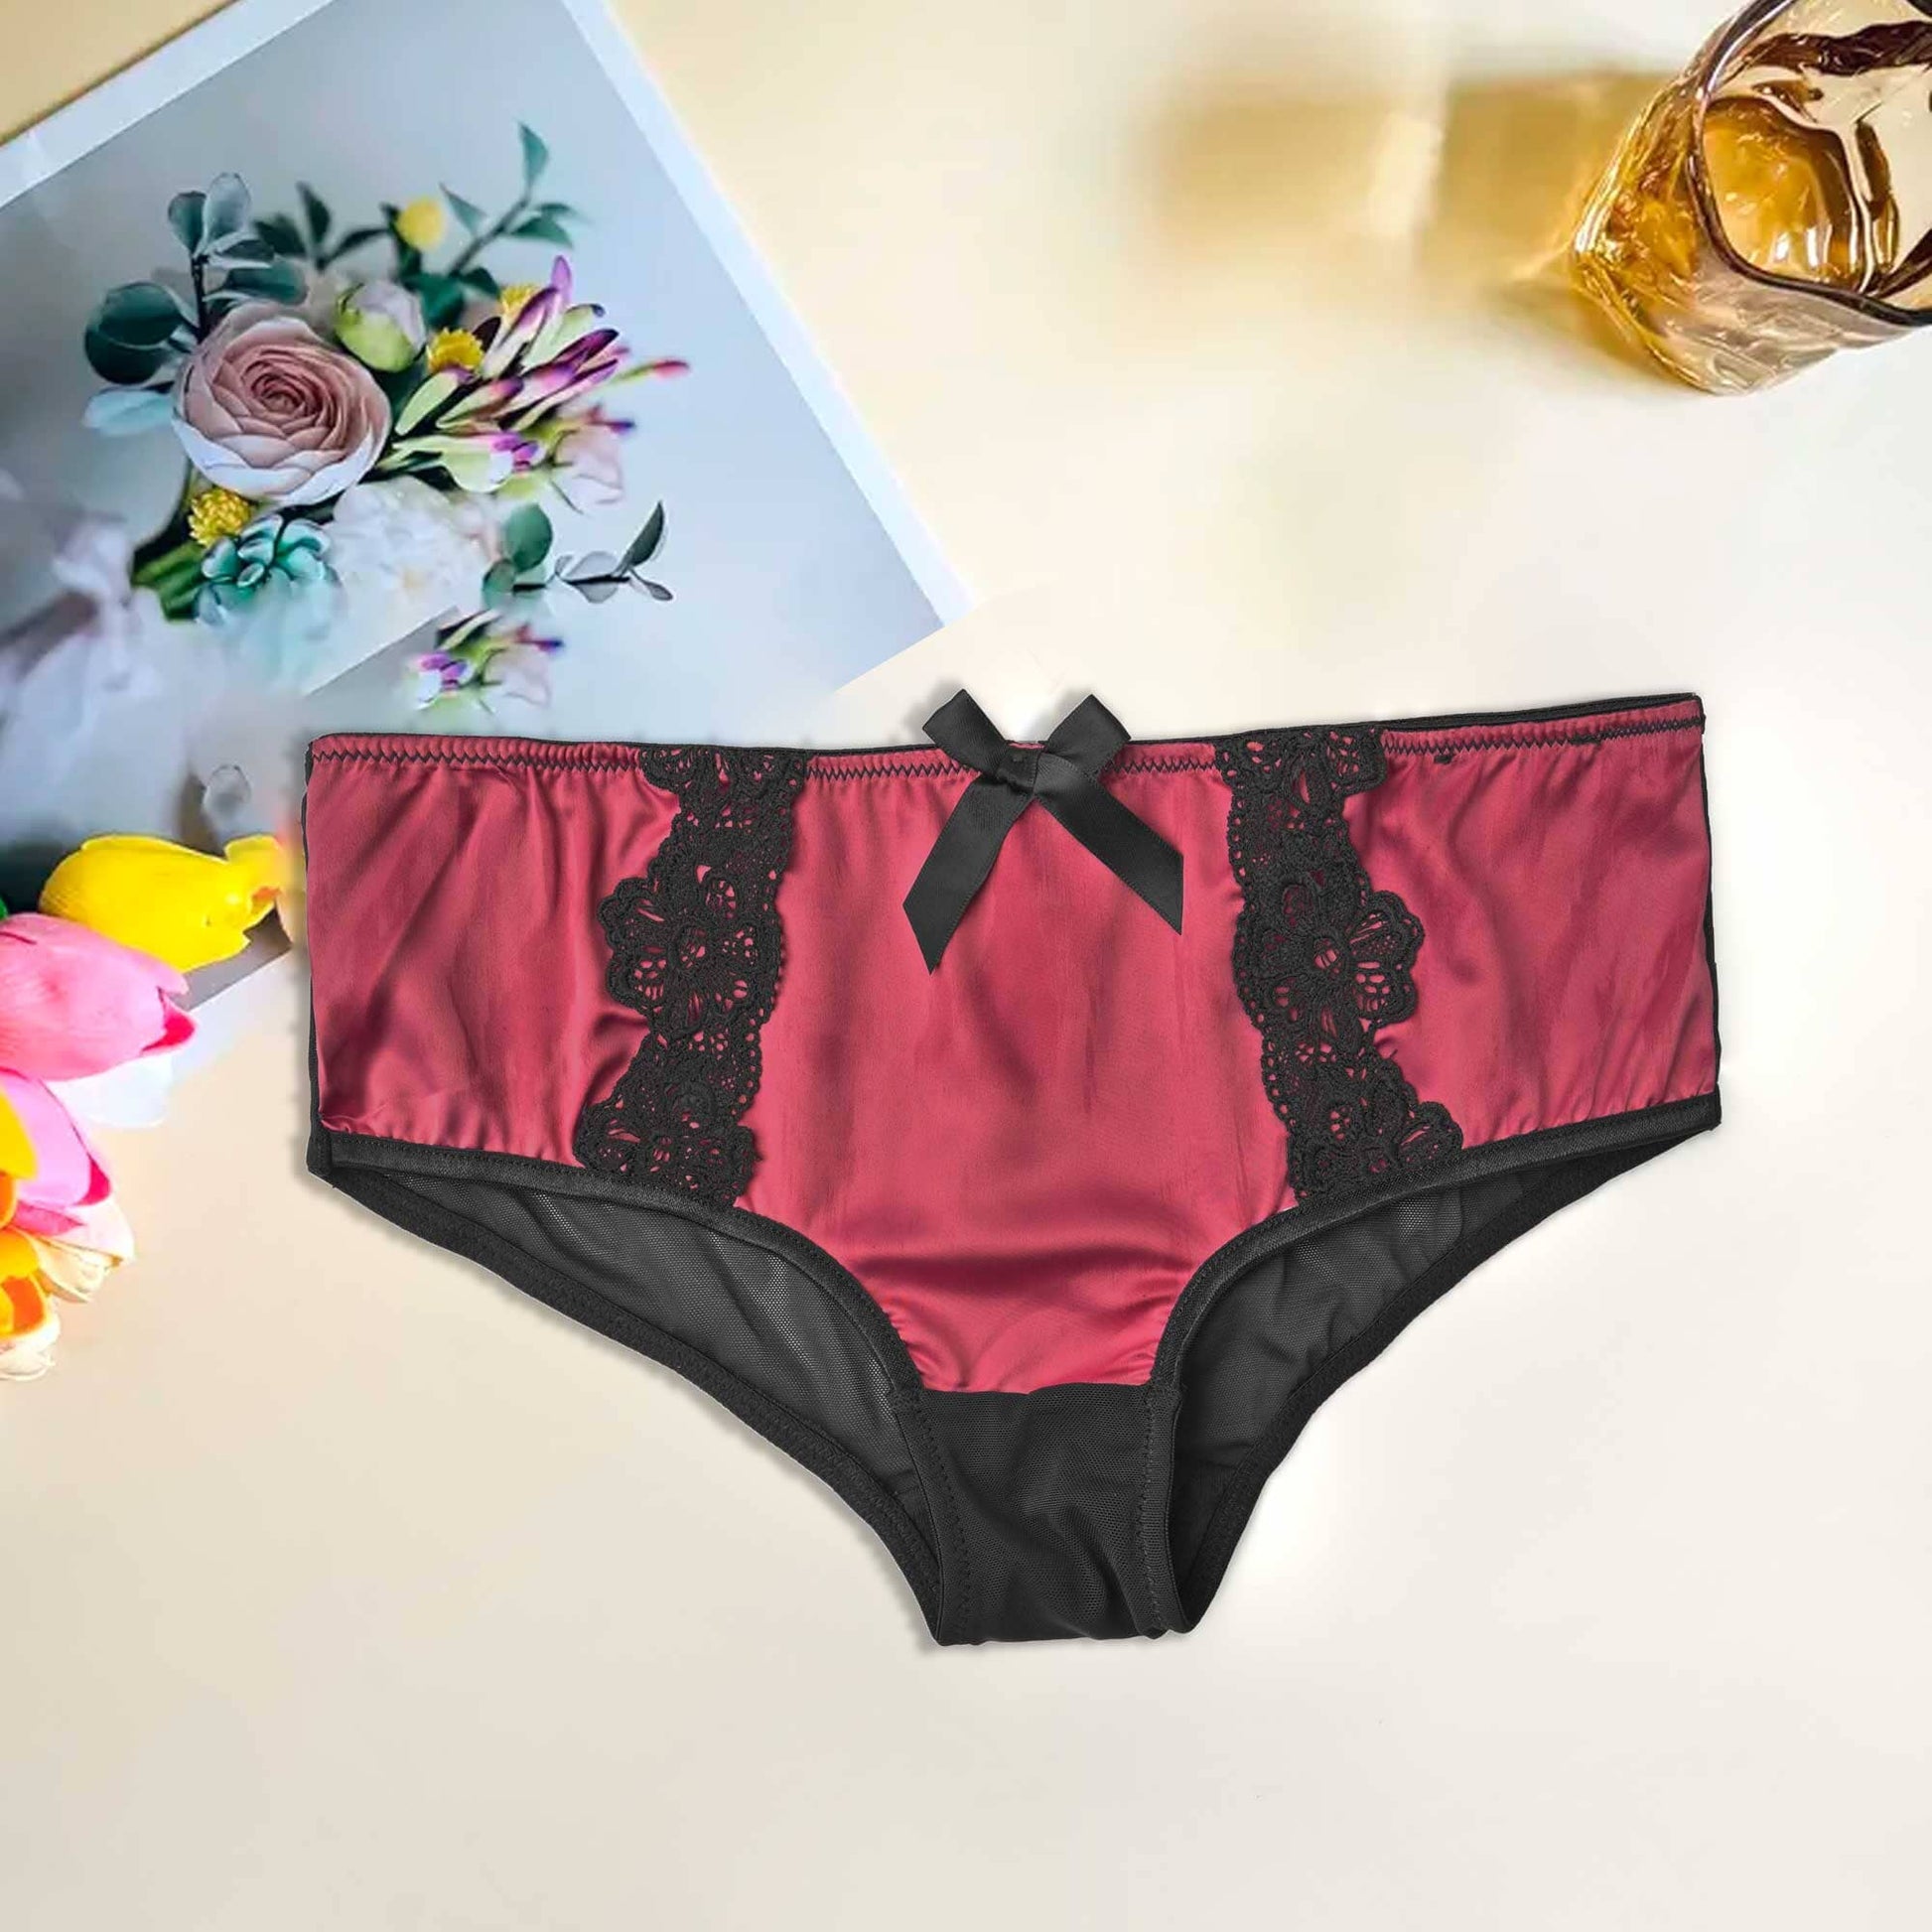 Mpz Women's Fancy Lace Design Silk Underwear Women's Lingerie RAM Maroon M 